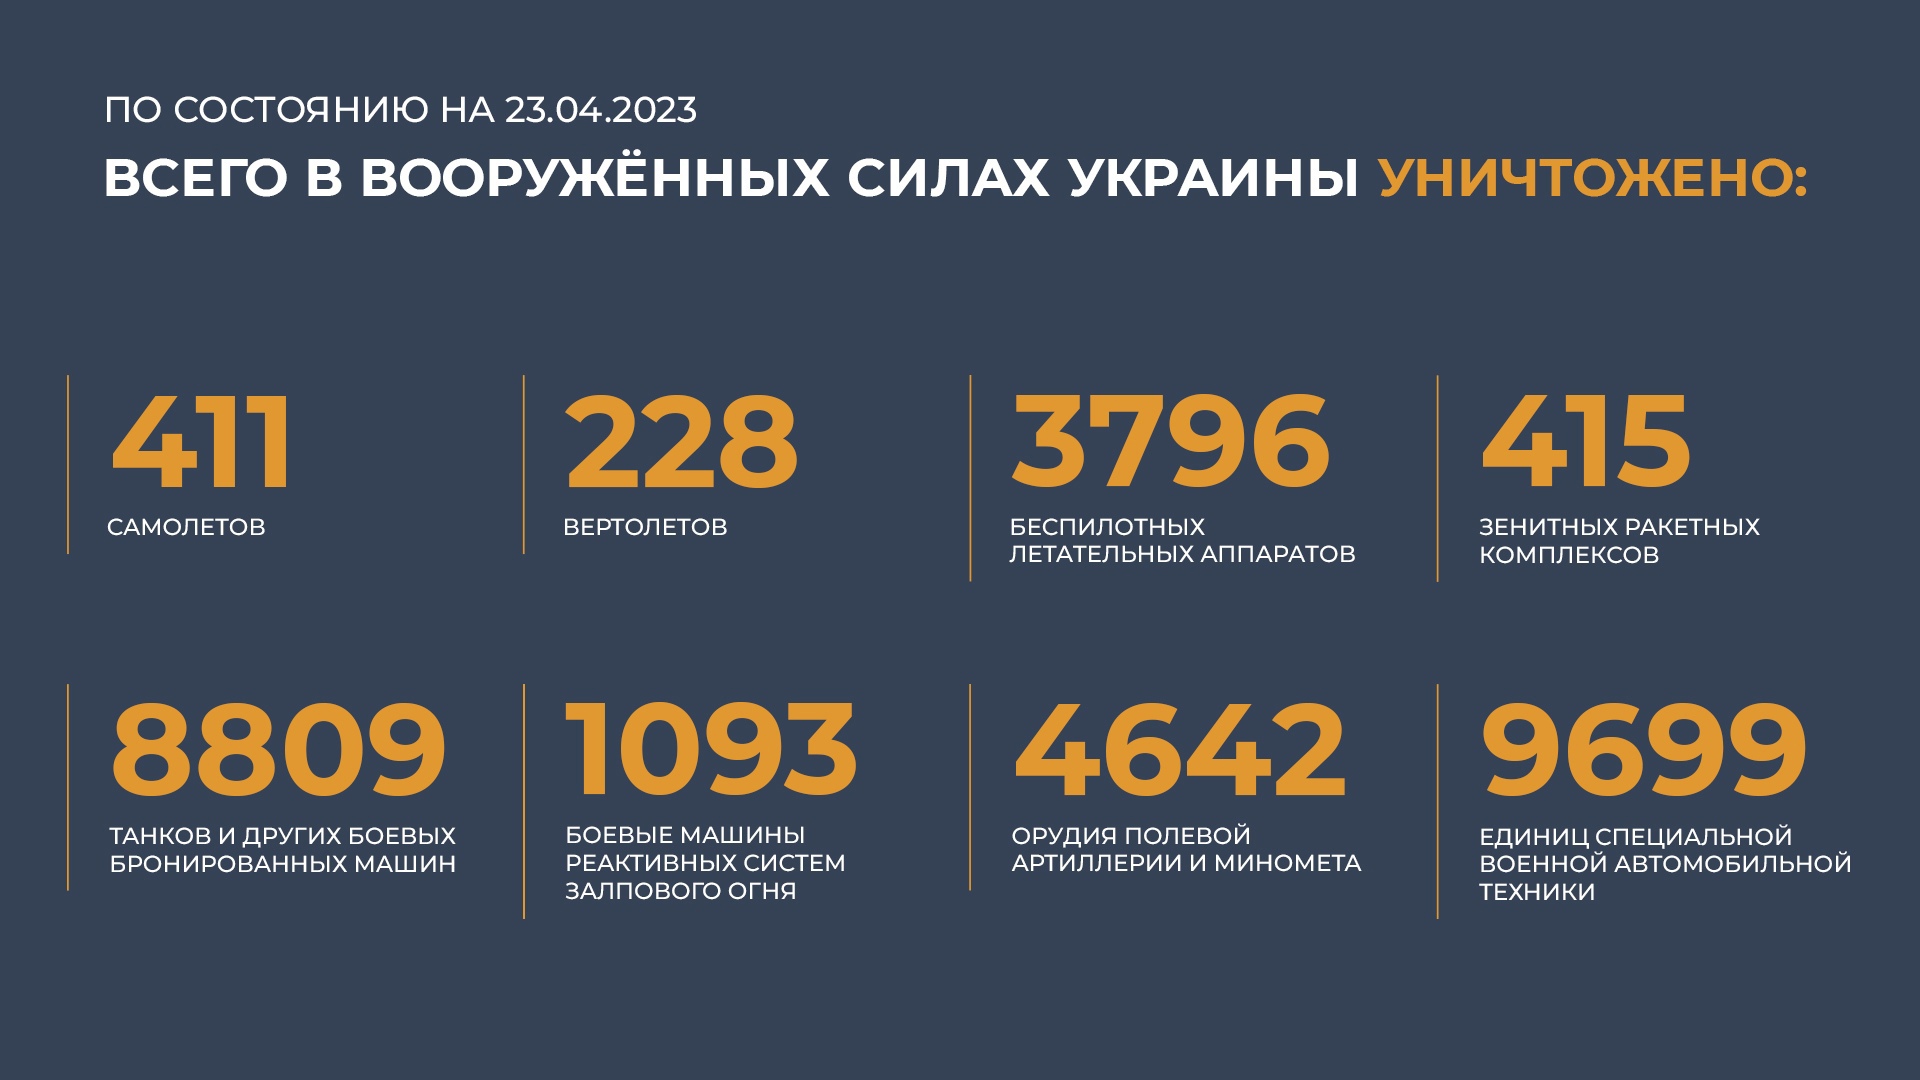 Сводка сво 28.03. Потери Украины 2023. Потери России в сво 2023. Сводка потерь ВСУ на сегодня. Потери ВСУ на сегодня 2023 года.